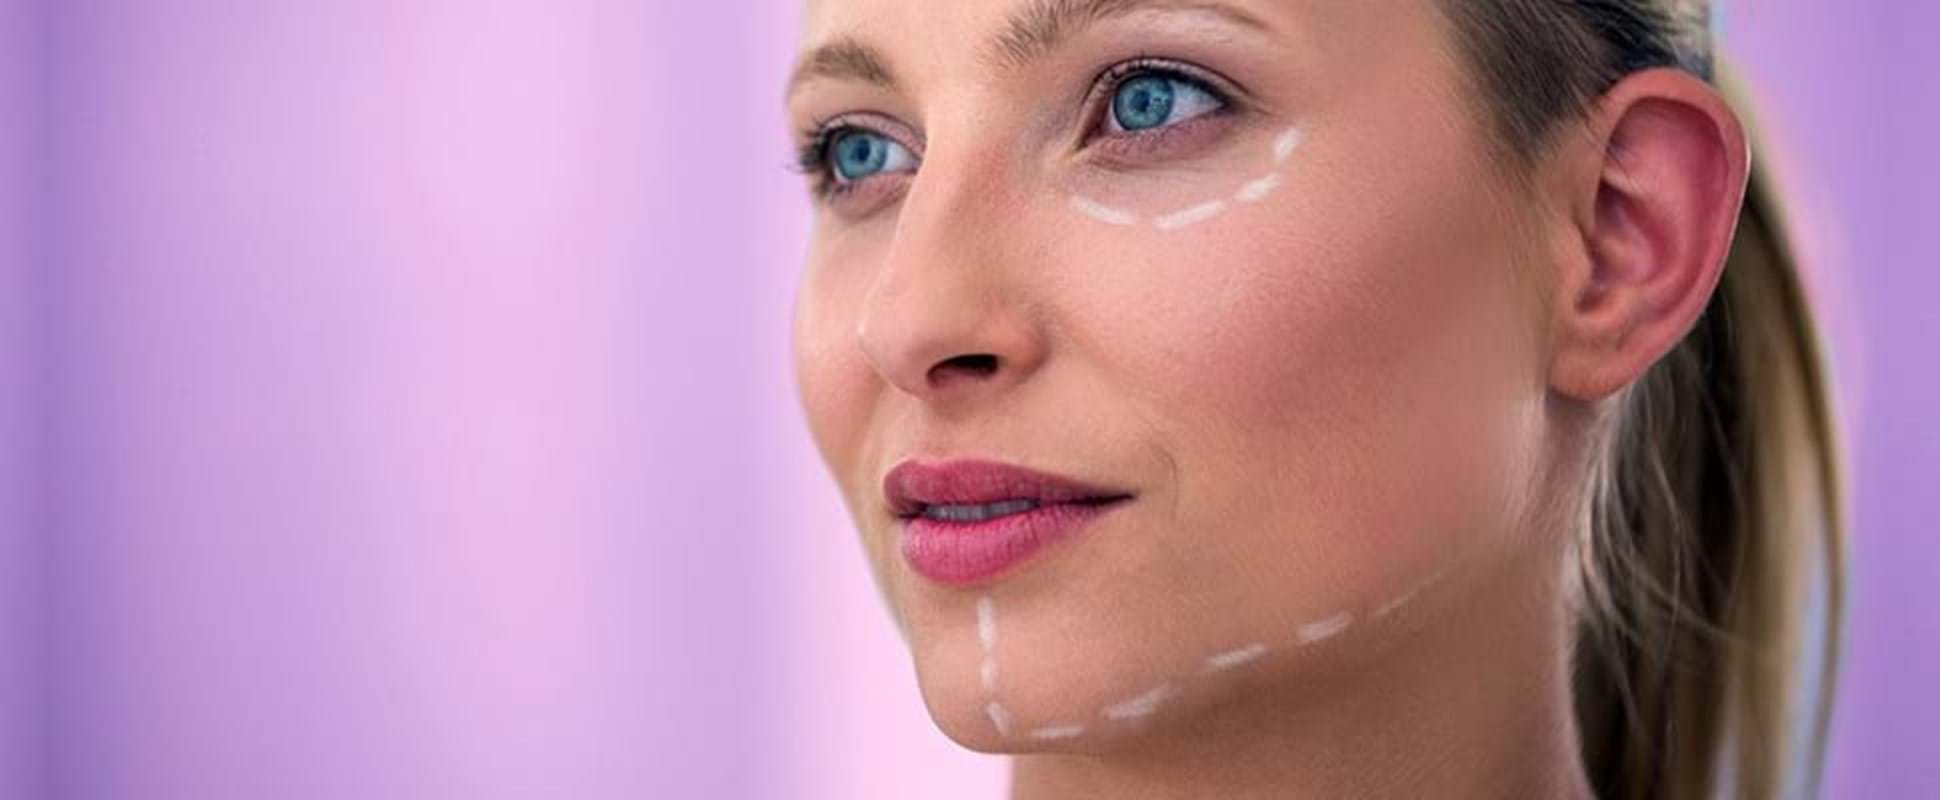 La cirugía plástica facial ya no es un tabú